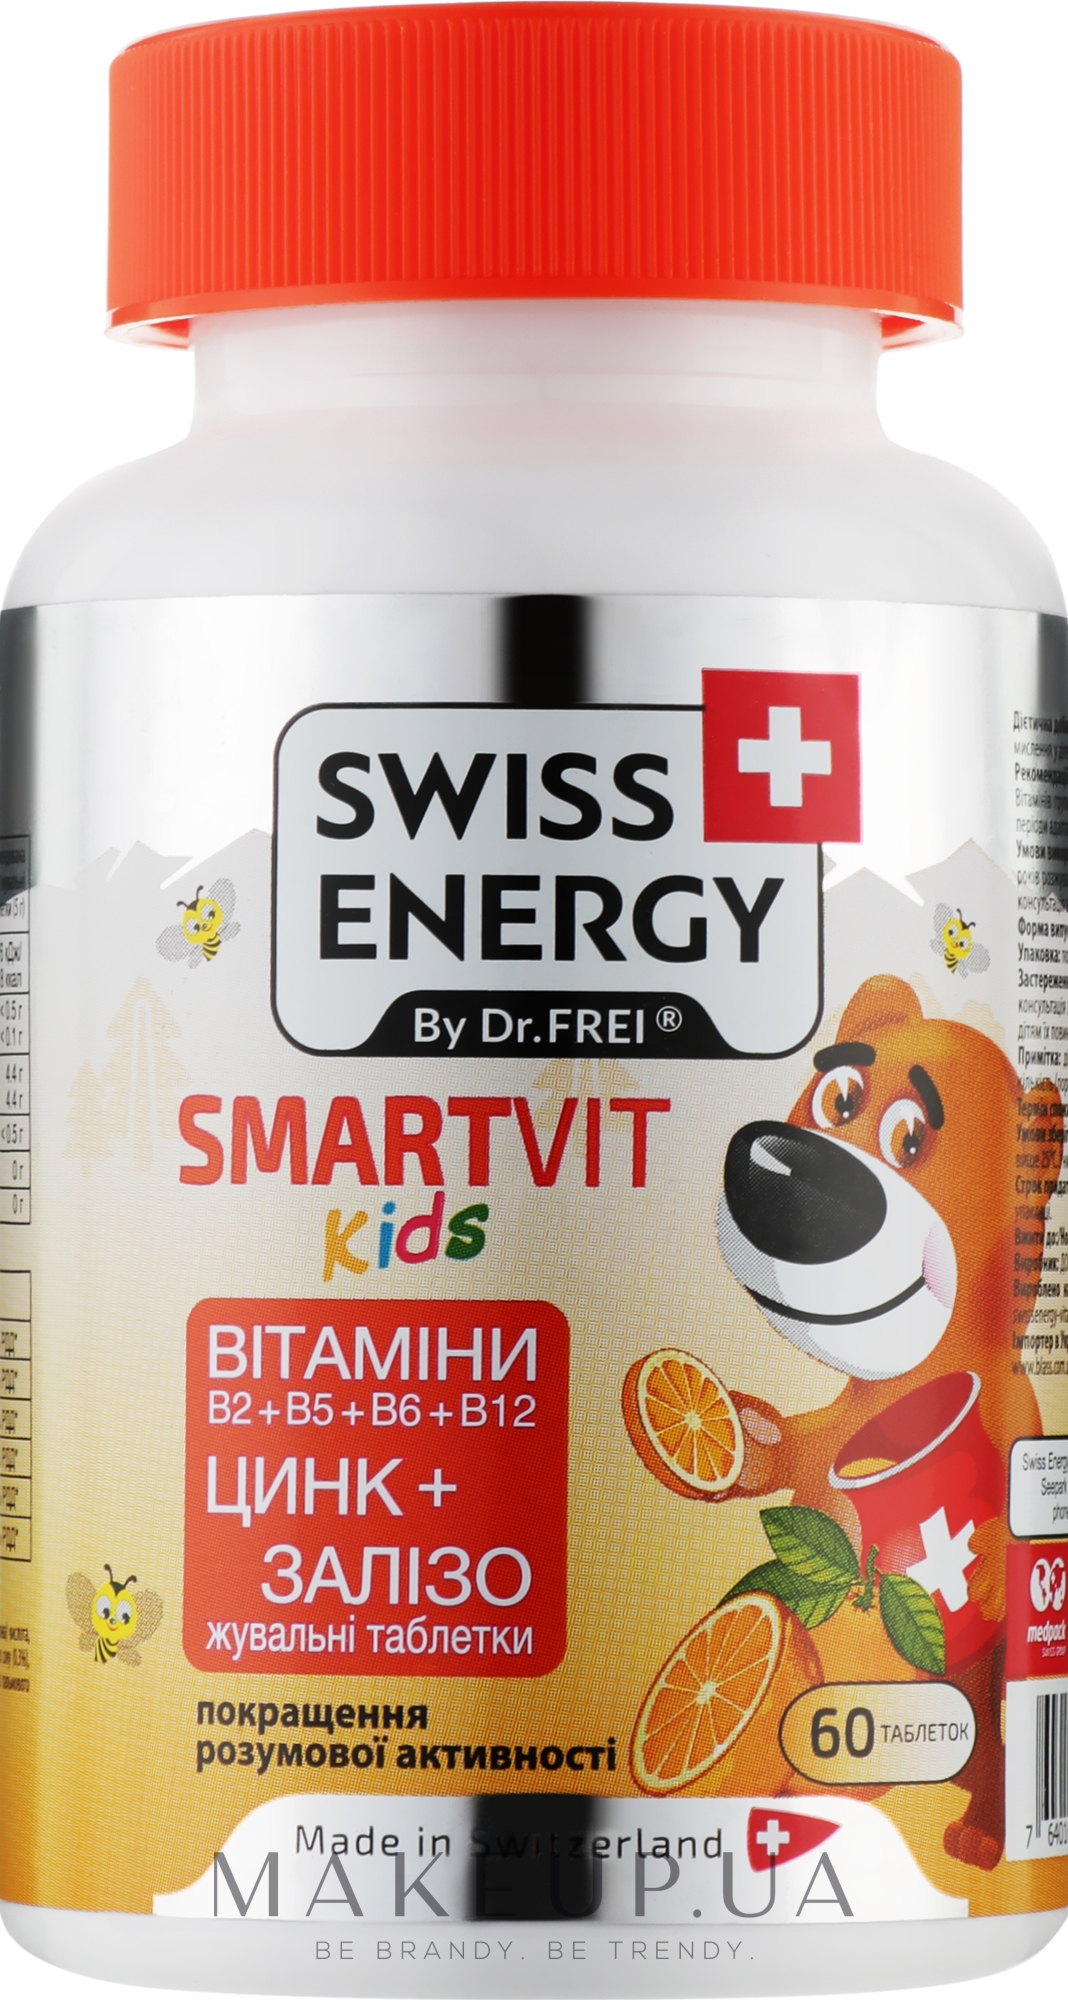 Вітамінні жувальні таблетки "Цинк + Залізо" - Swiss Energy Smartvit Kids — фото 60шт